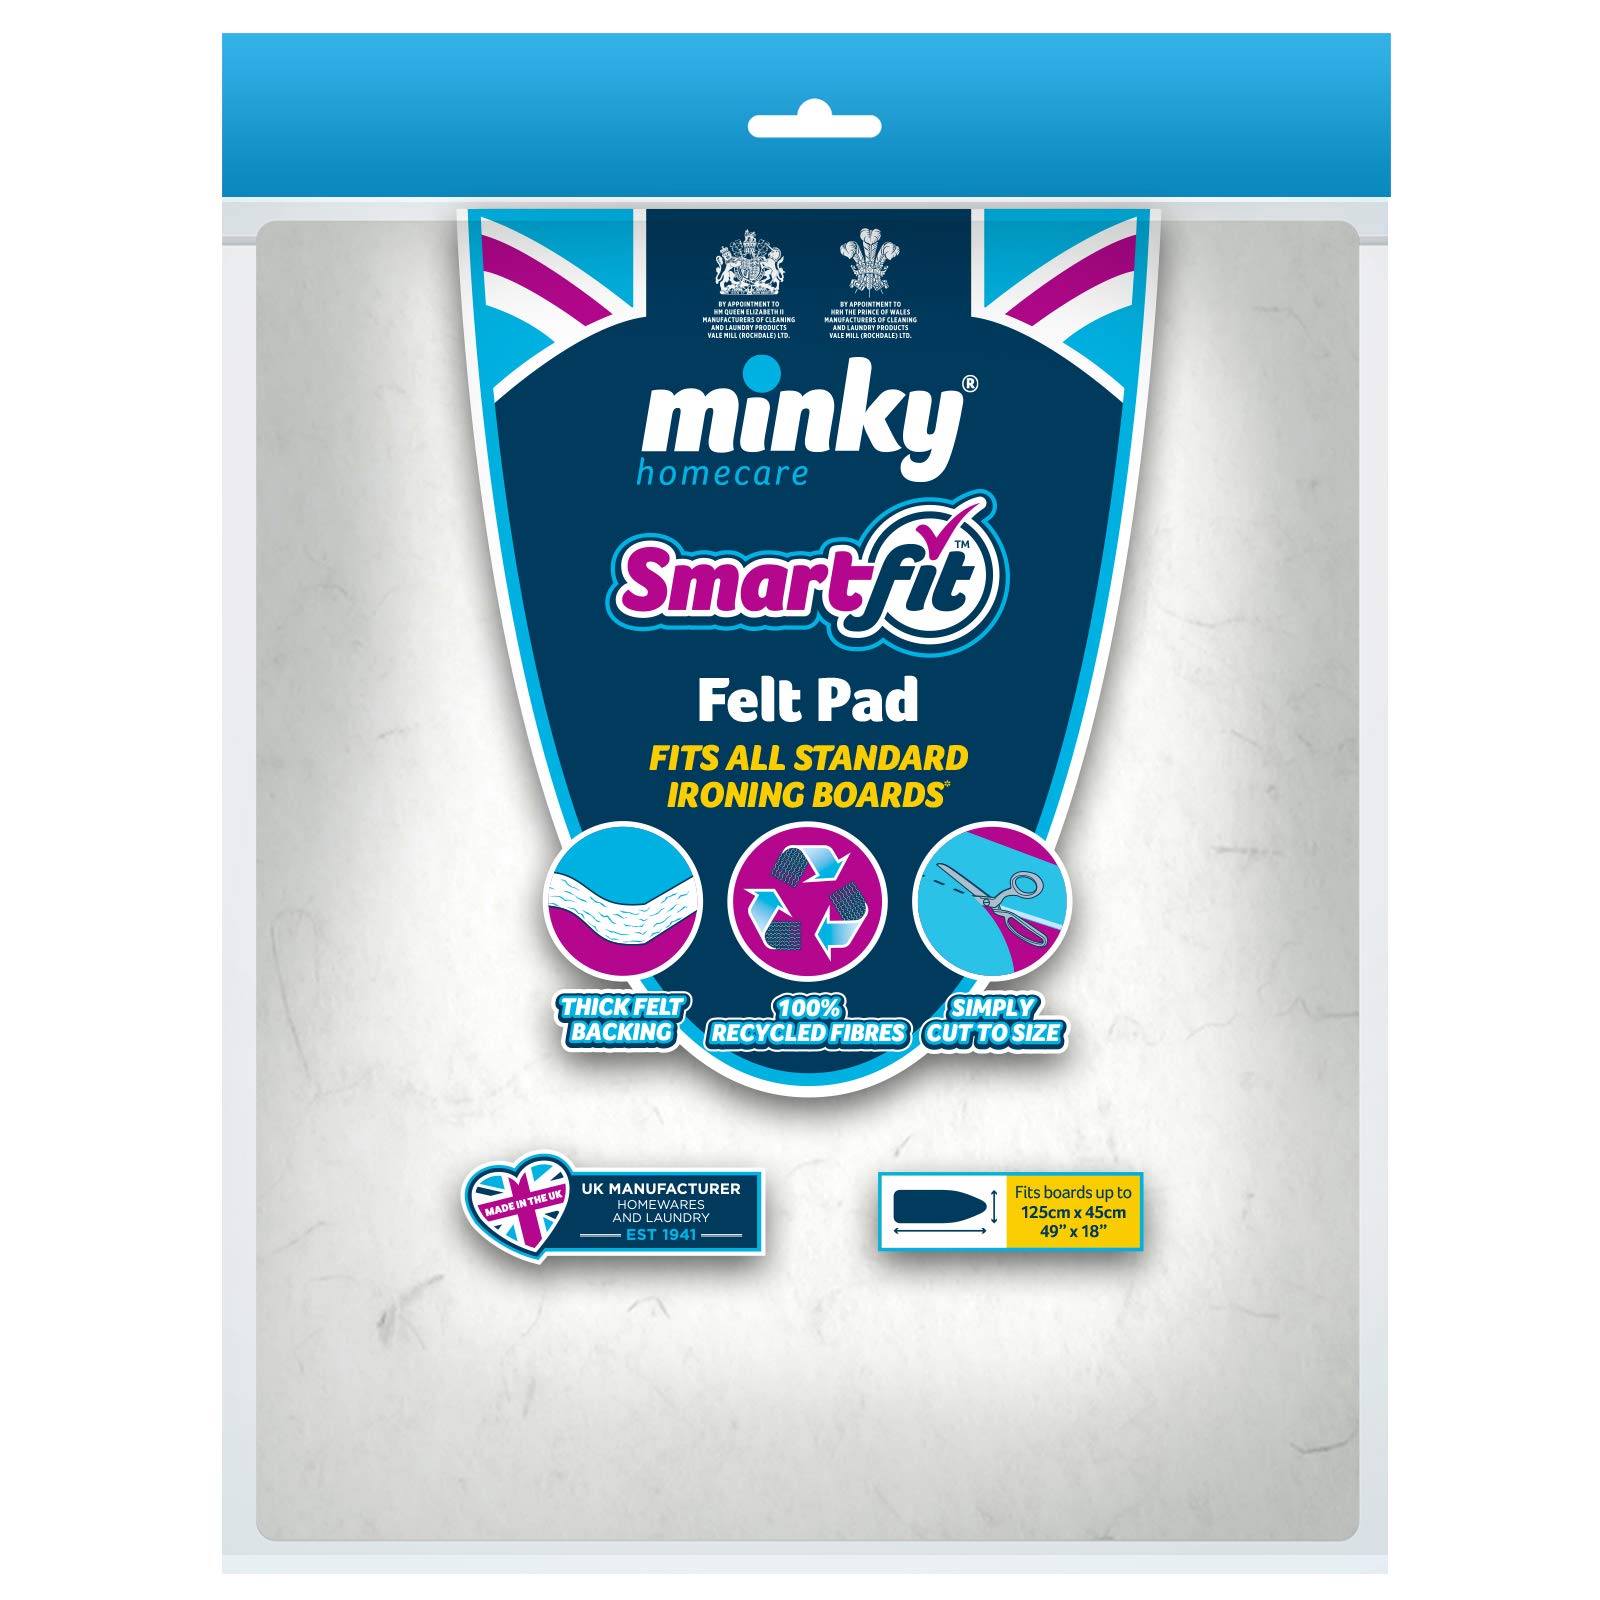 Minky Homecare SmartFit Felt Pad, 49